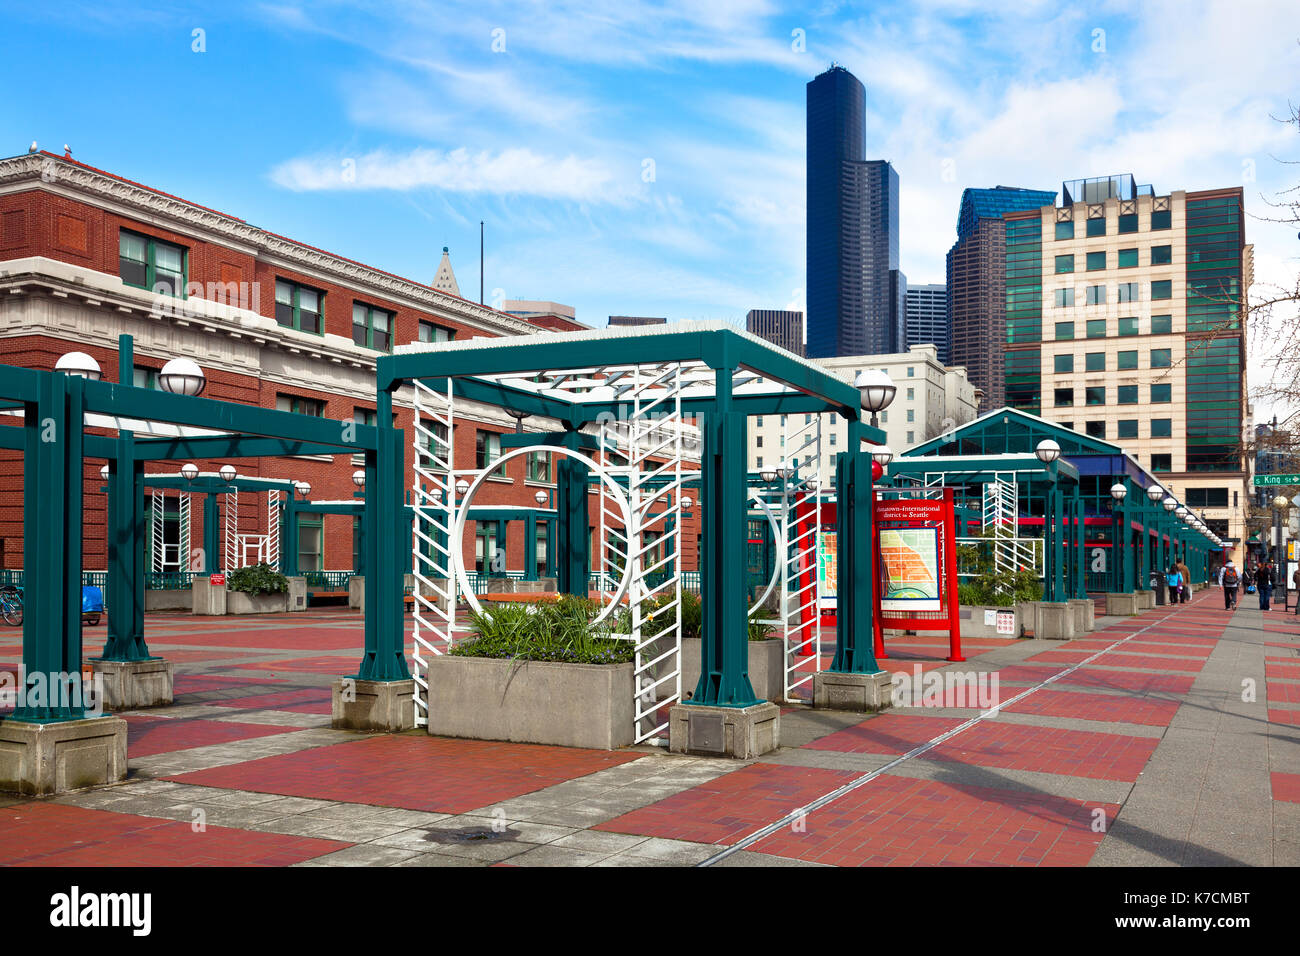 Estación de tránsito público de Seattle en Chinatown distrito internacional Foto de stock